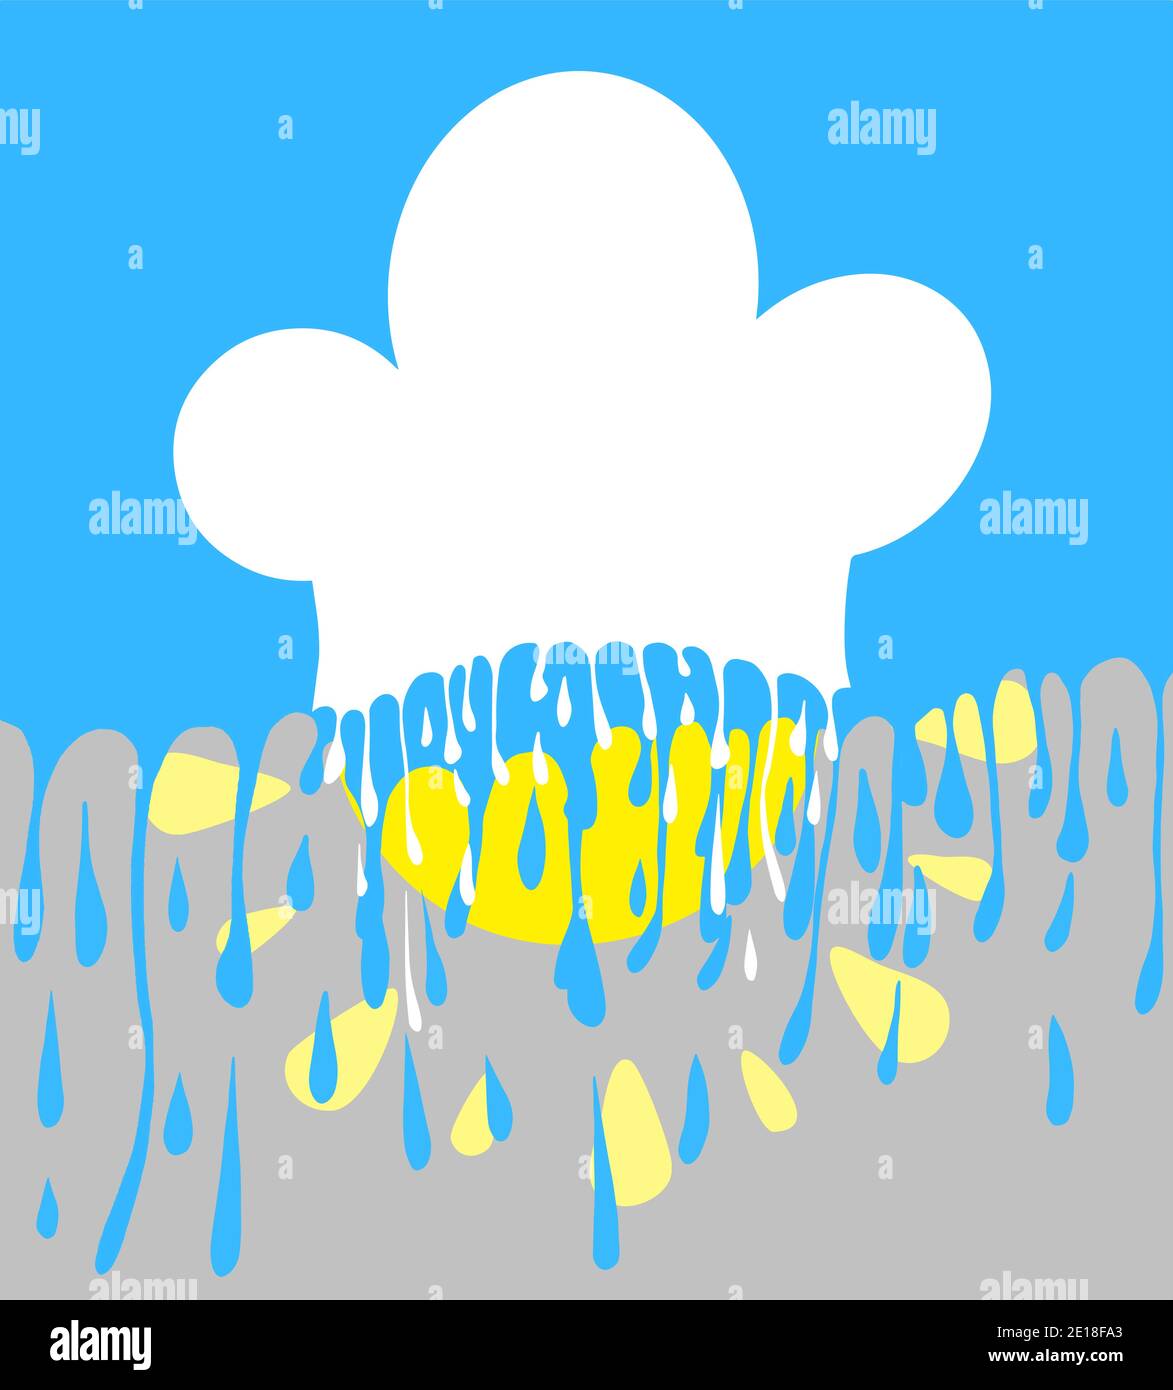 Concept de cuisine d'été. Le soleil dans un chapeau de chef - nuage, ciel et pluie. Copiez l'espace pour votre texte. Illustration vectorielle eps10 superposée. Illustration de Vecteur